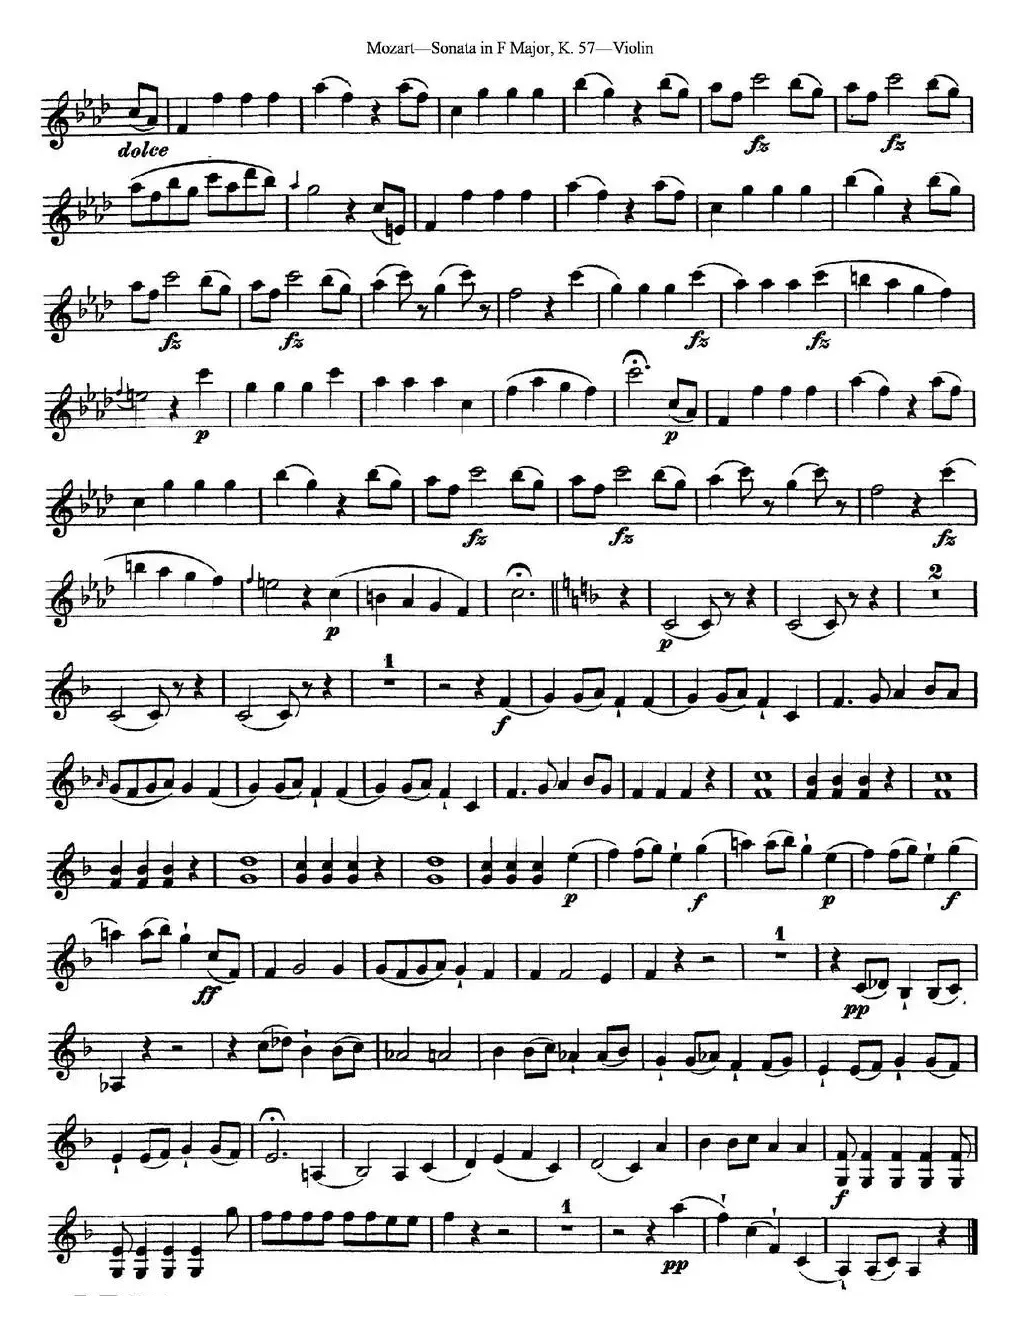 Violin Sonata in F Major K.357